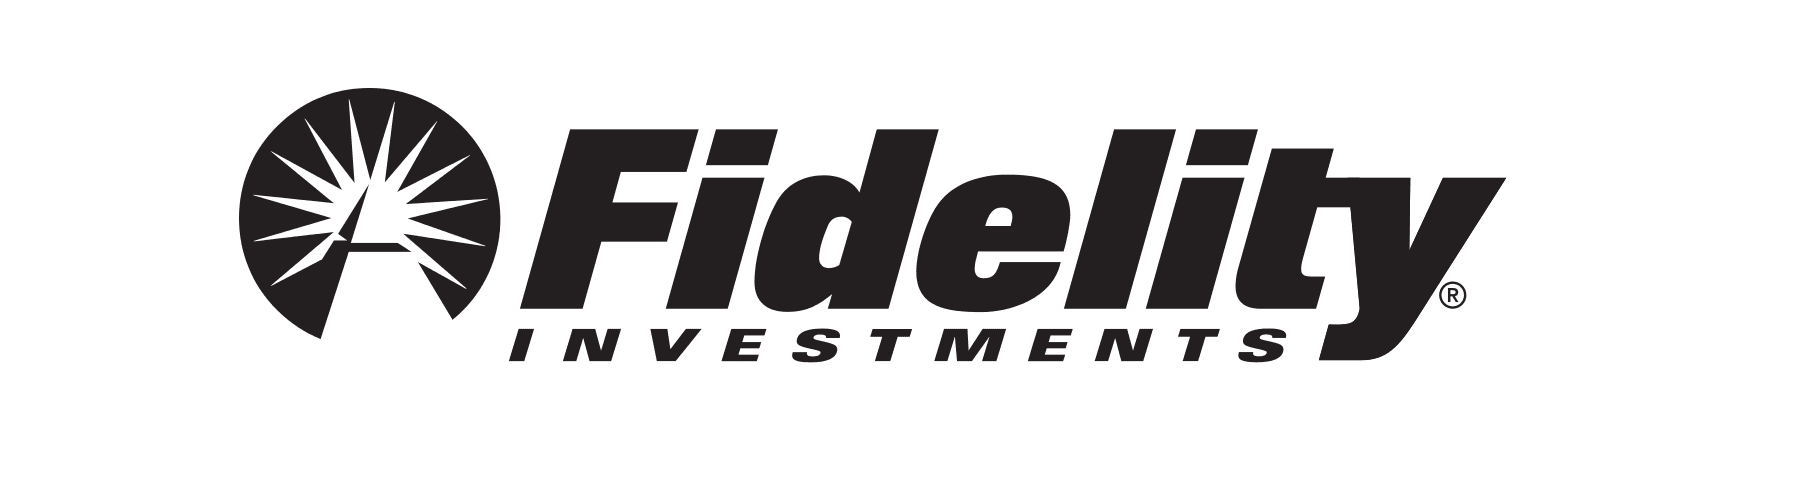 Inwestycje Fidelity